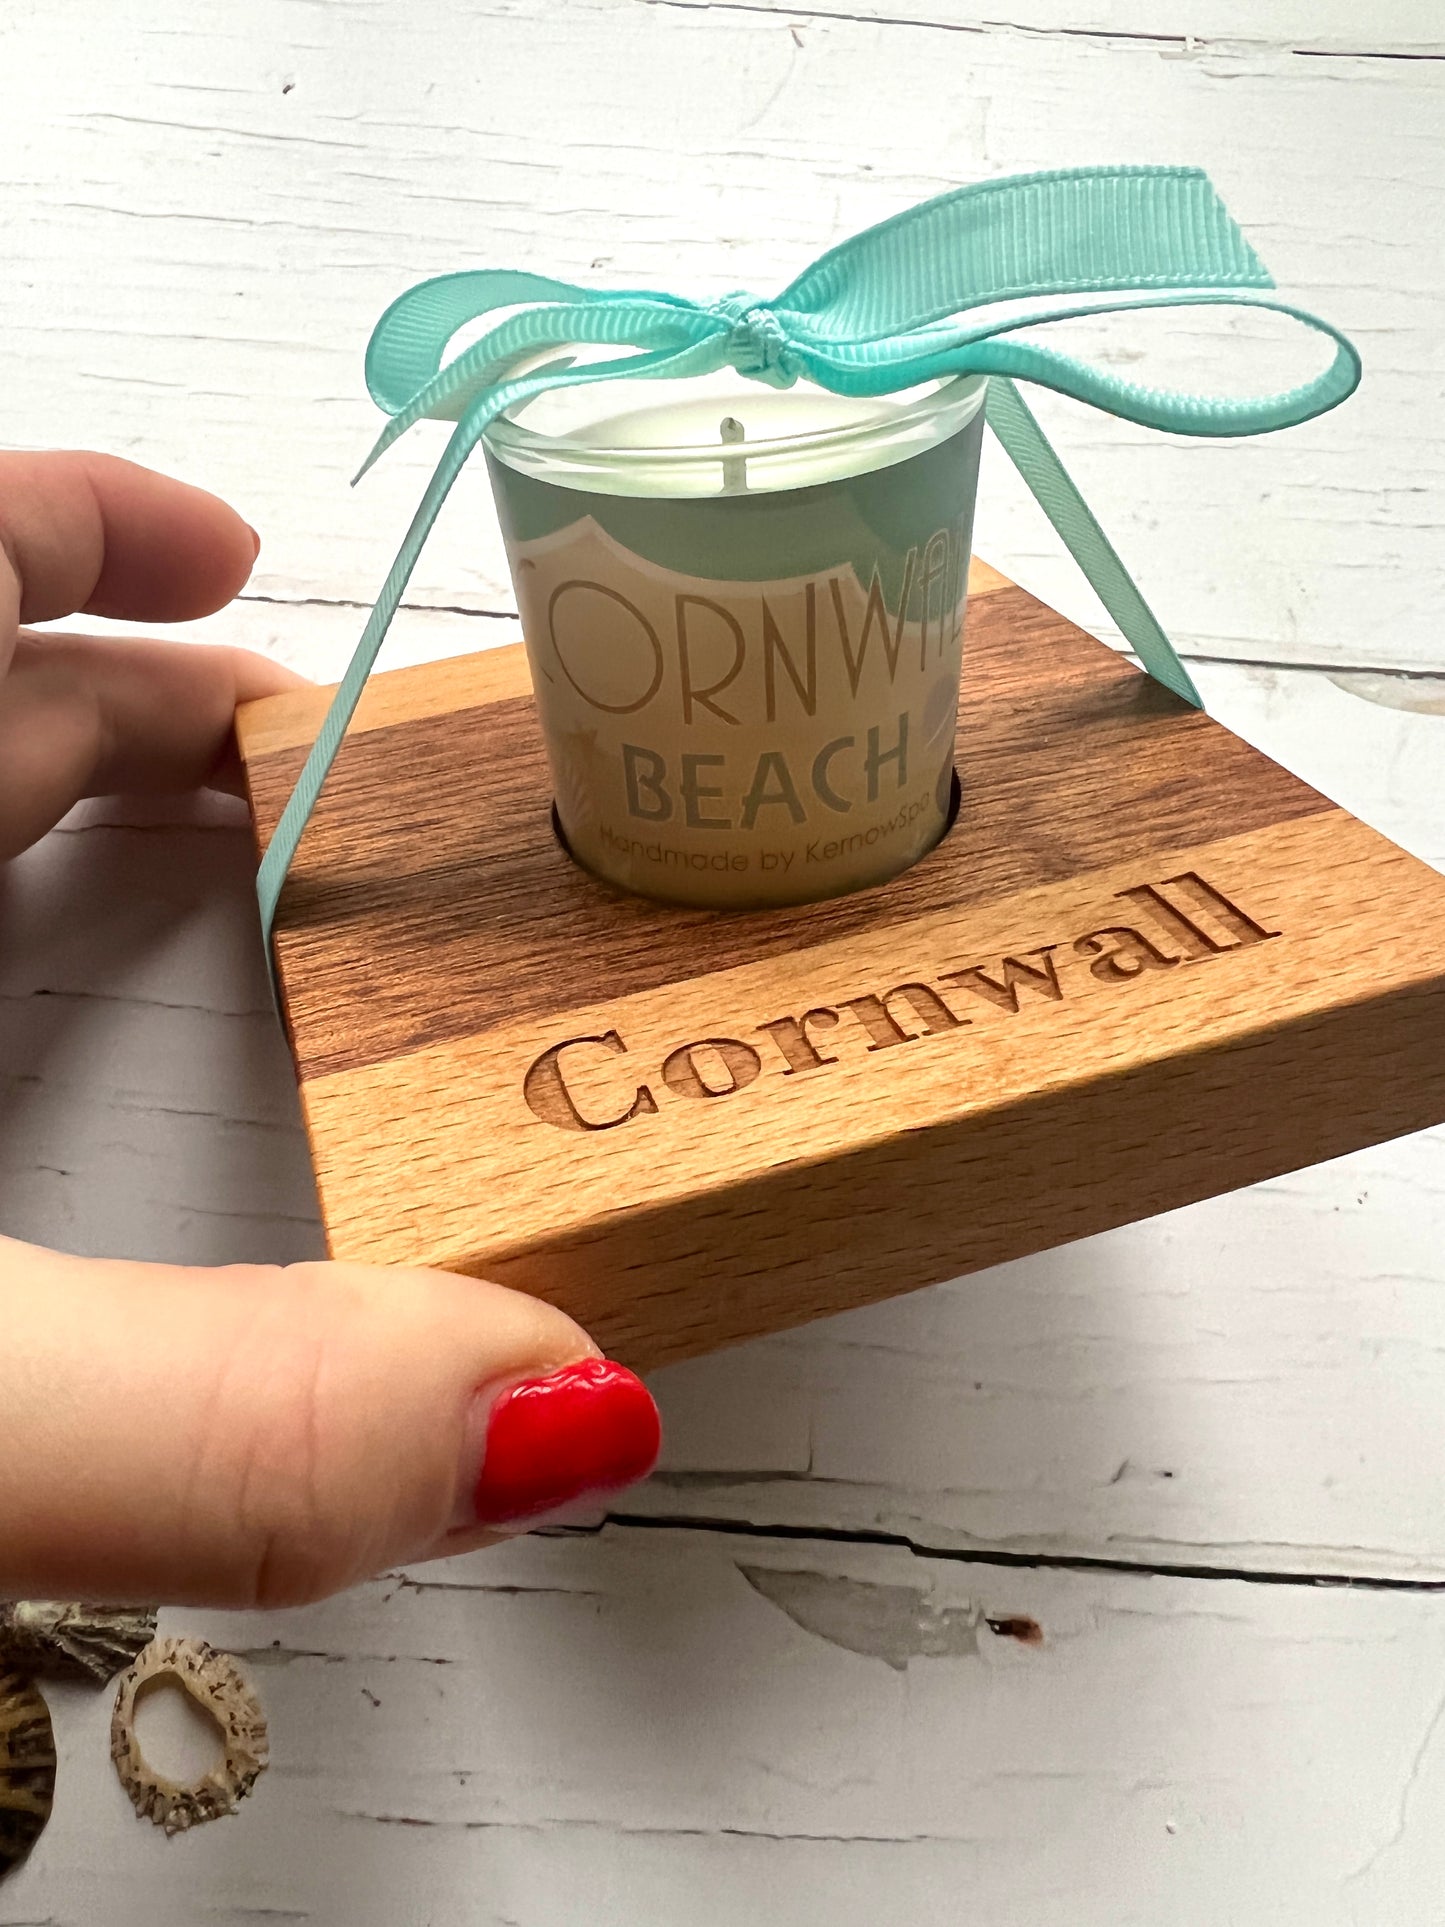 Cornwall Candle Gift Set